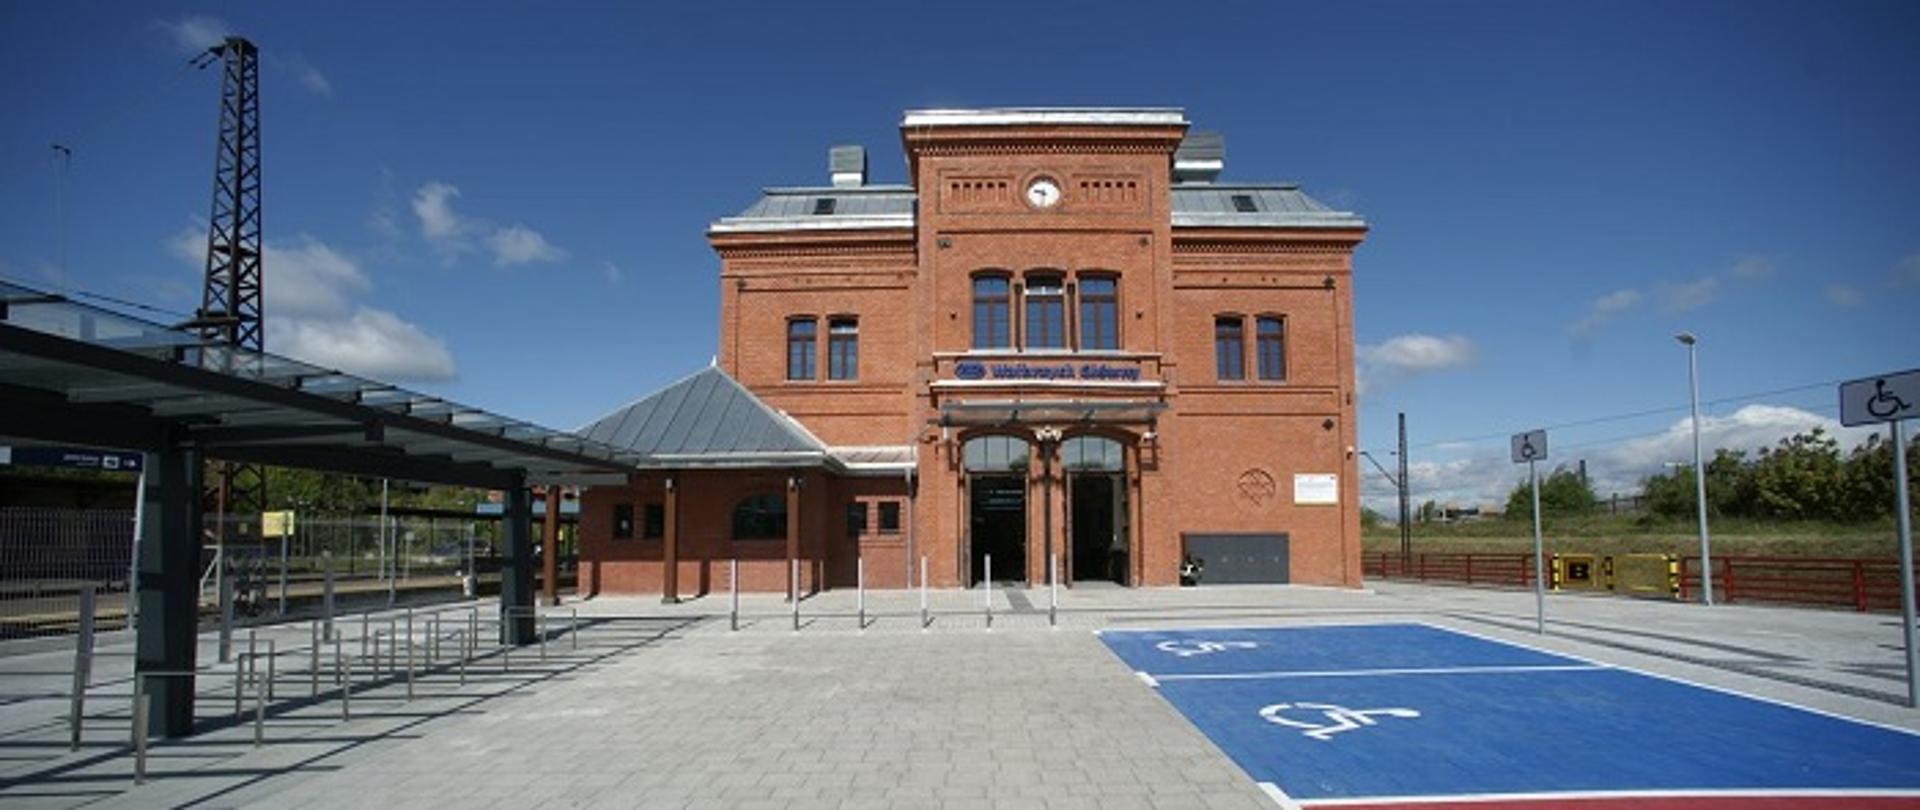 Zdjęcie przedstawia budynek dworca kolejowego z czerwonej cegły. Przed budynkiem widoczny parking z miejscami dla osób z niepełnosprawnością, wiata na rowery oraz wejście na peron.